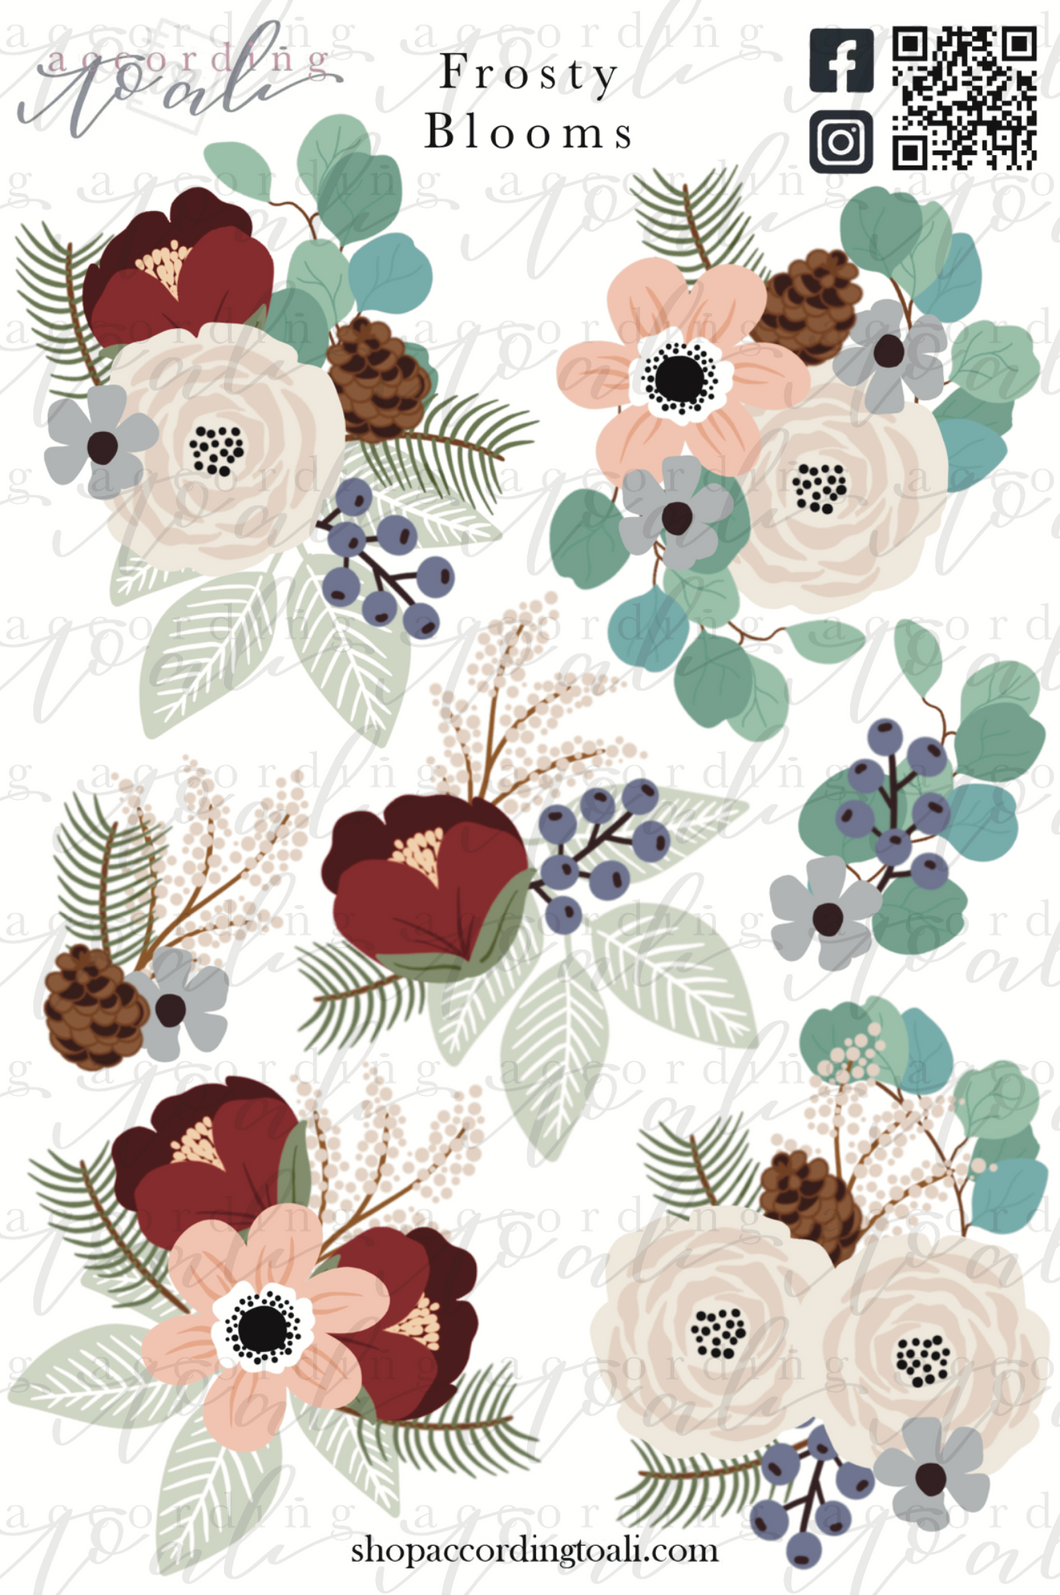 Frosty Blooms Sticker Sheet